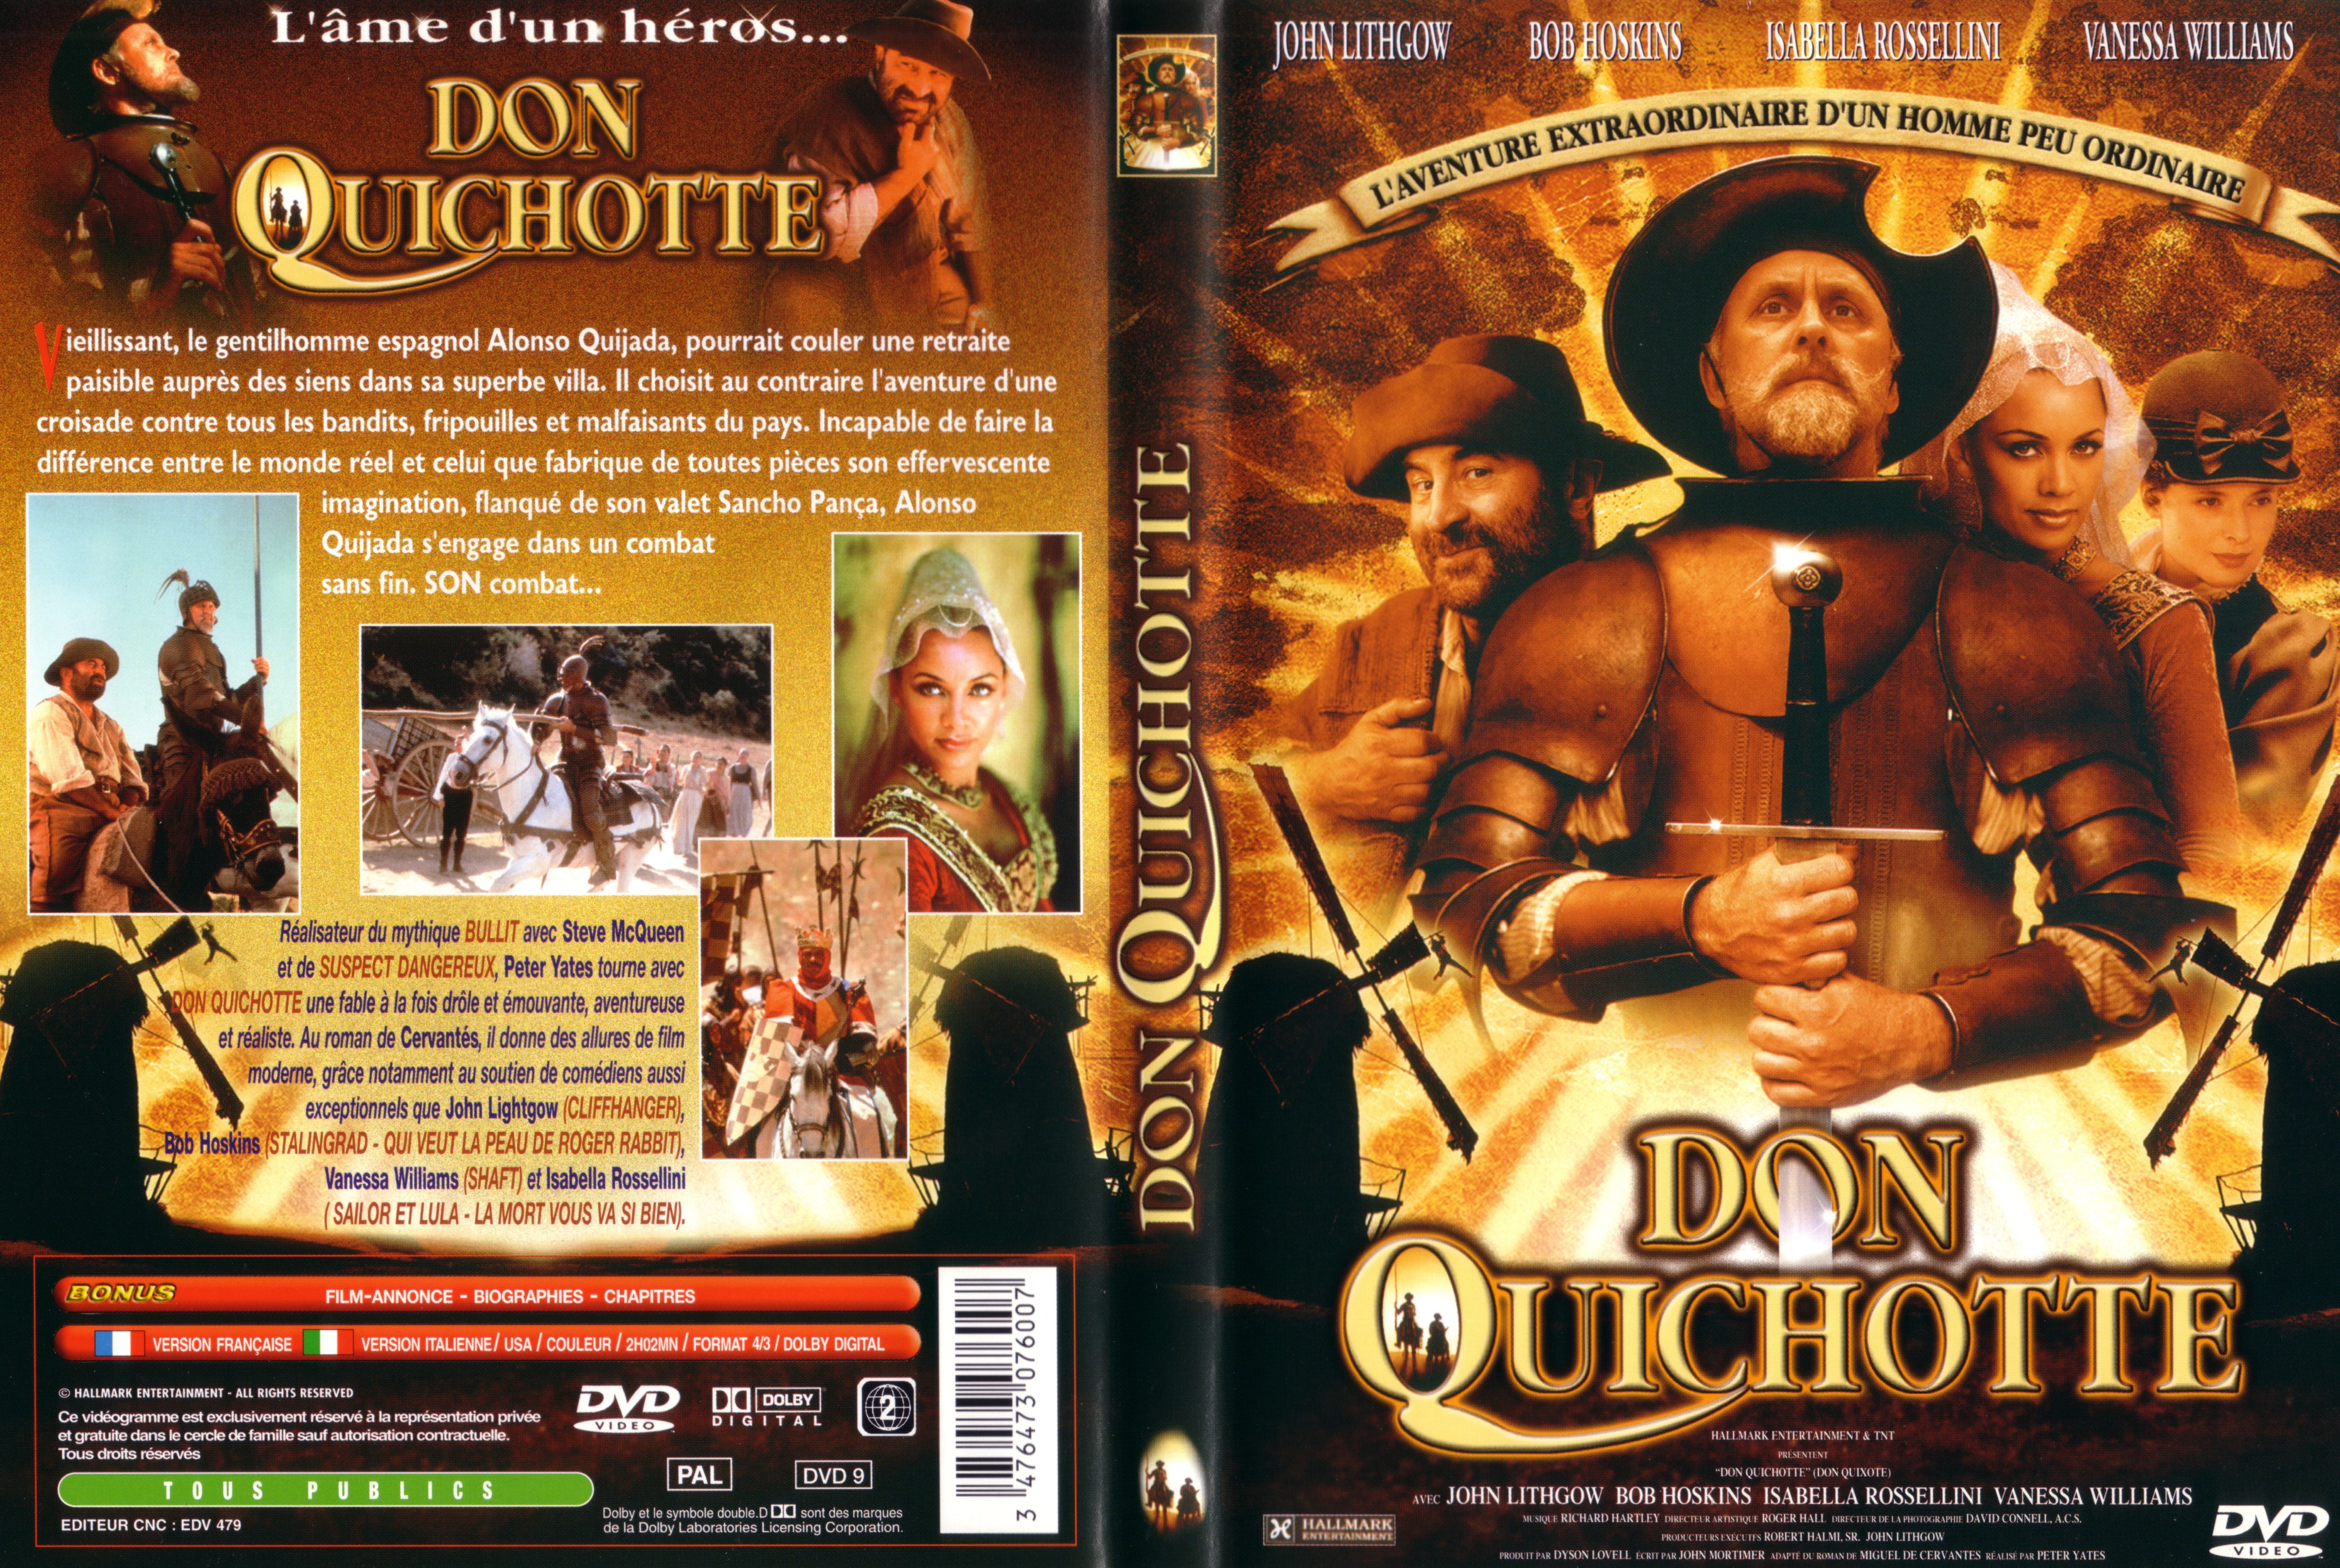 Jaquette DVD Don Quichotte (John Lithgow)